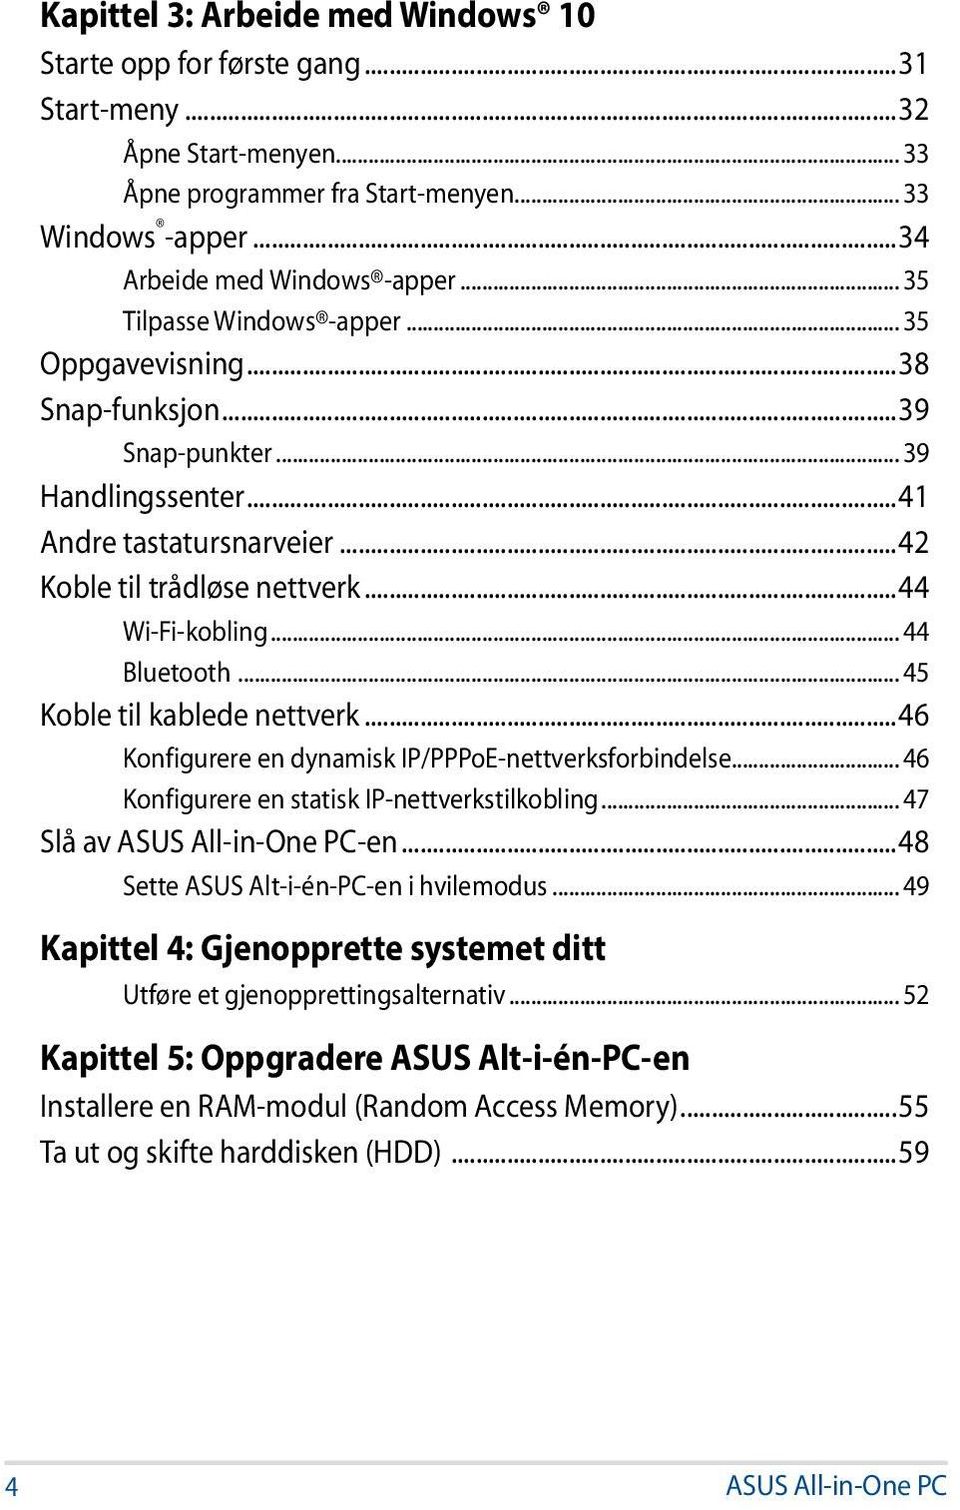 .. 44 Bluetooth... 45 Koble til kablede nettverk...46 Konfigurere en dynamisk IP/PPPoE-nettverksforbindelse... 46 Konfigurere en statisk IP-nettverkstilkobling... 47 Slå av ASUS All-in-One PC-en.